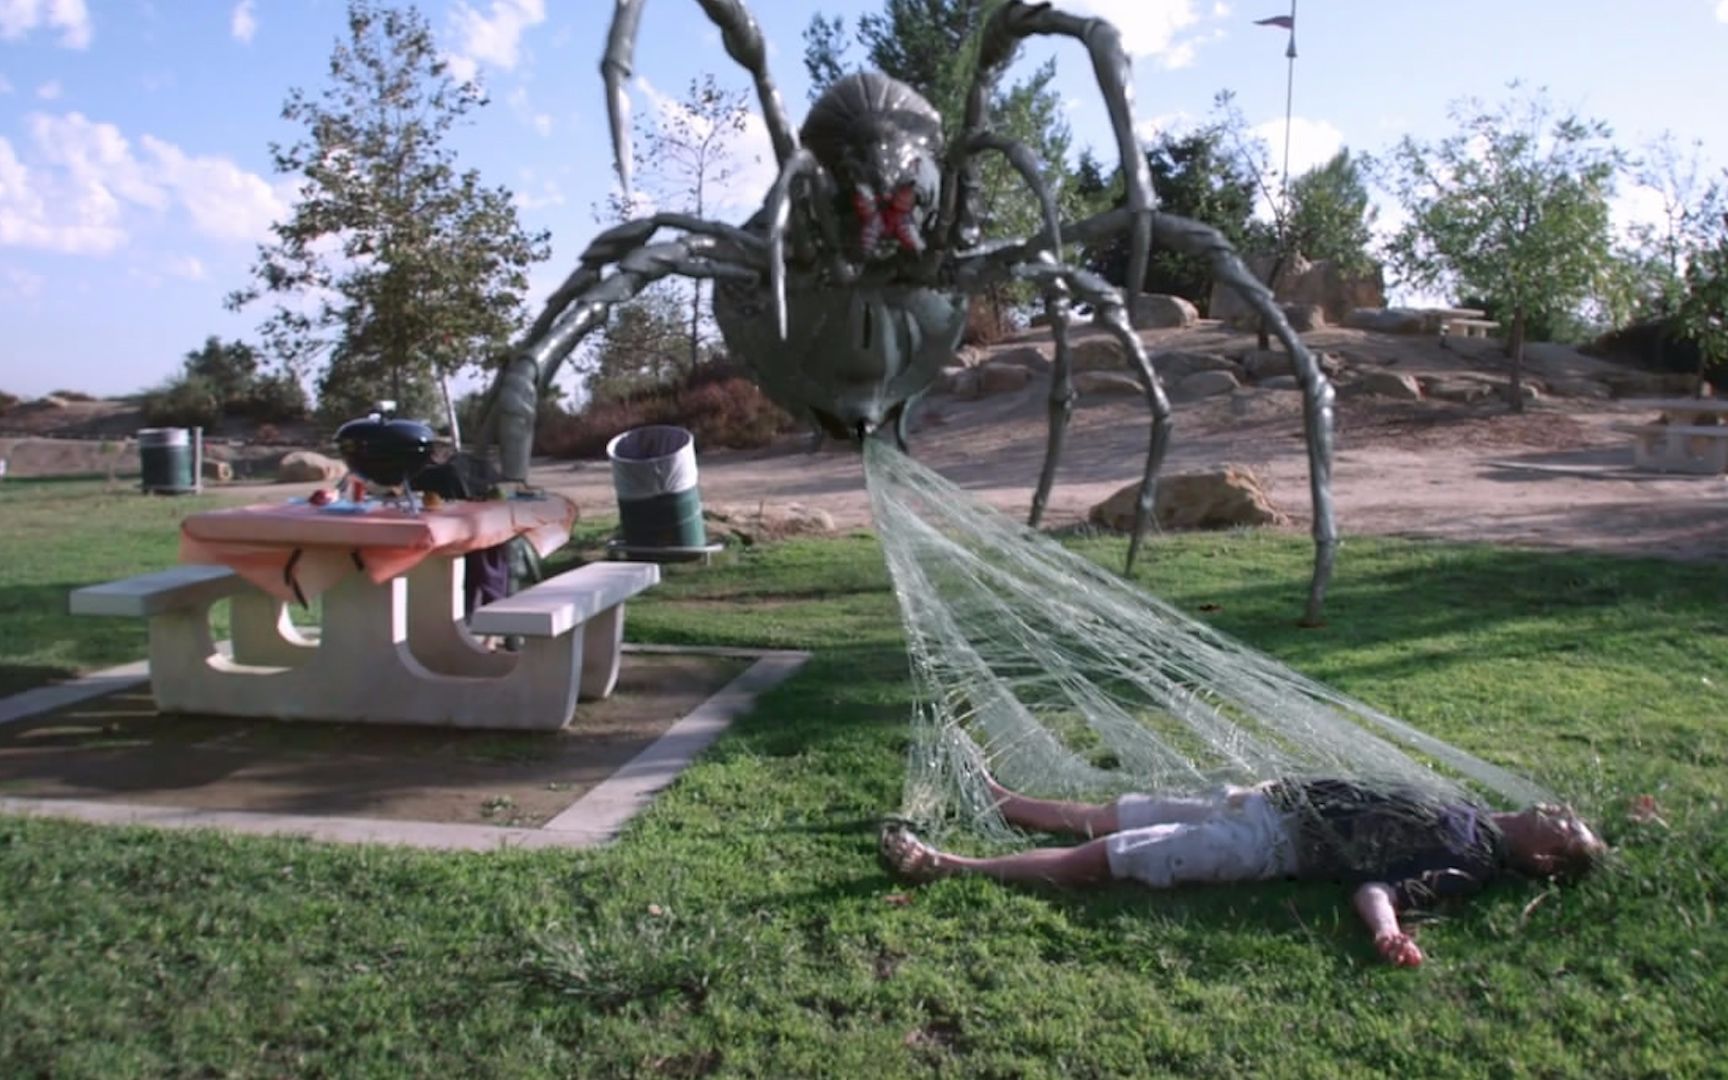 【大白话】巨型蜘蛛现身城市公园,见人就吃场面吓人!